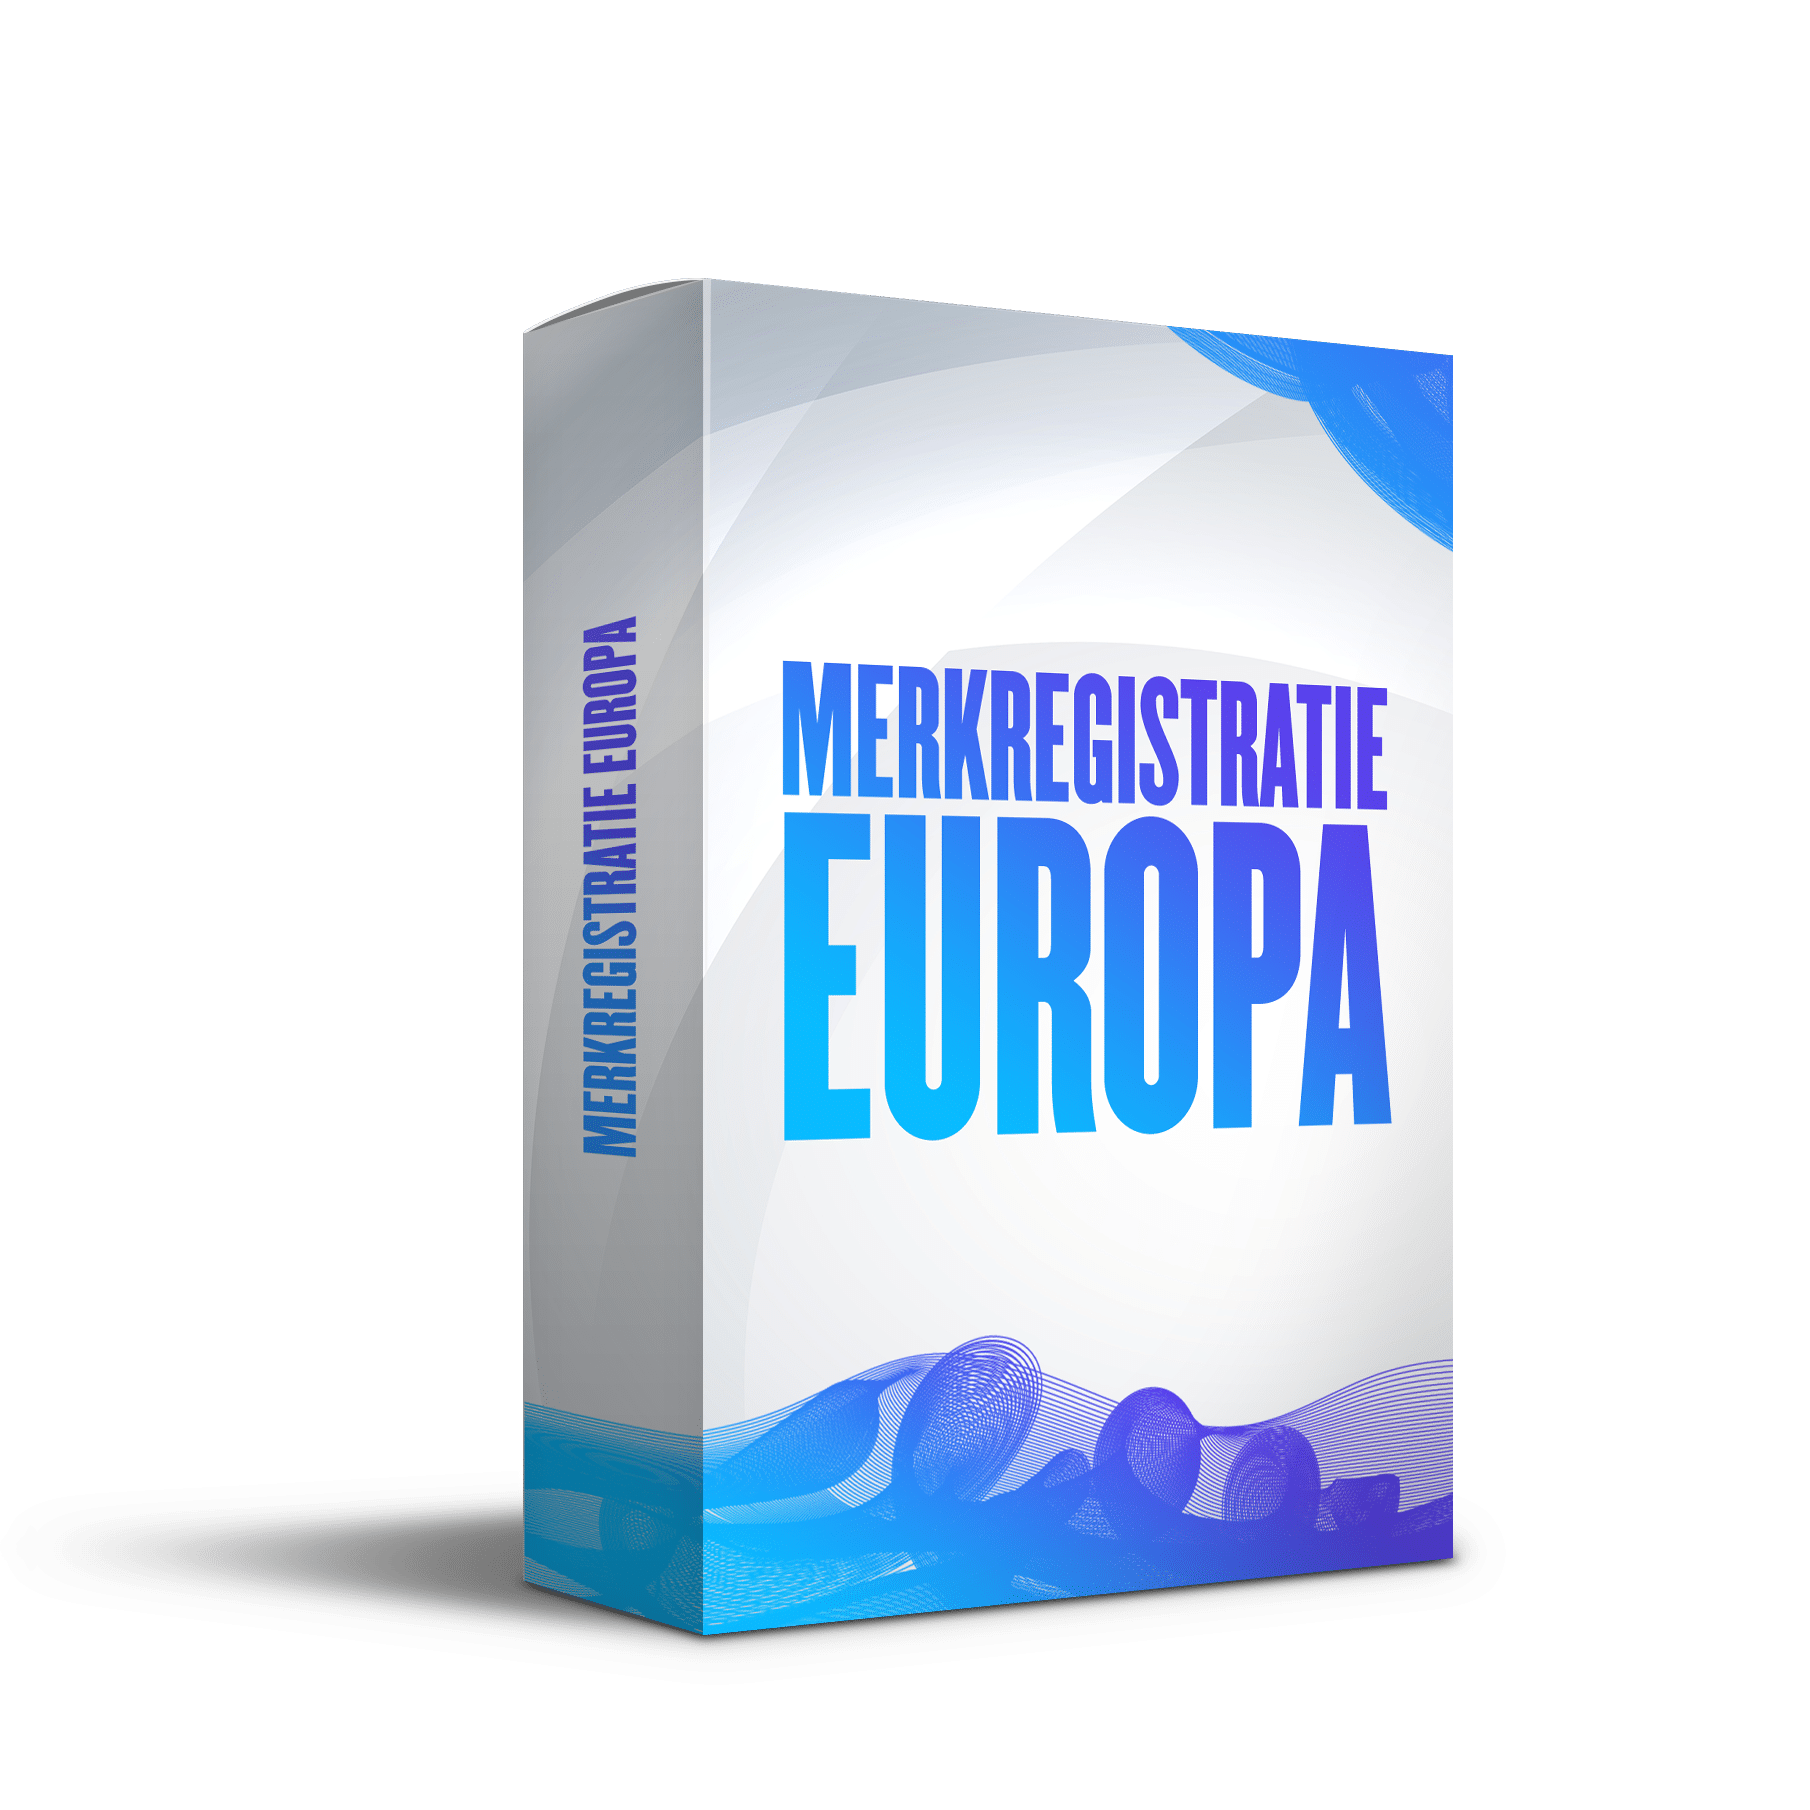 Merkregistratie Europa